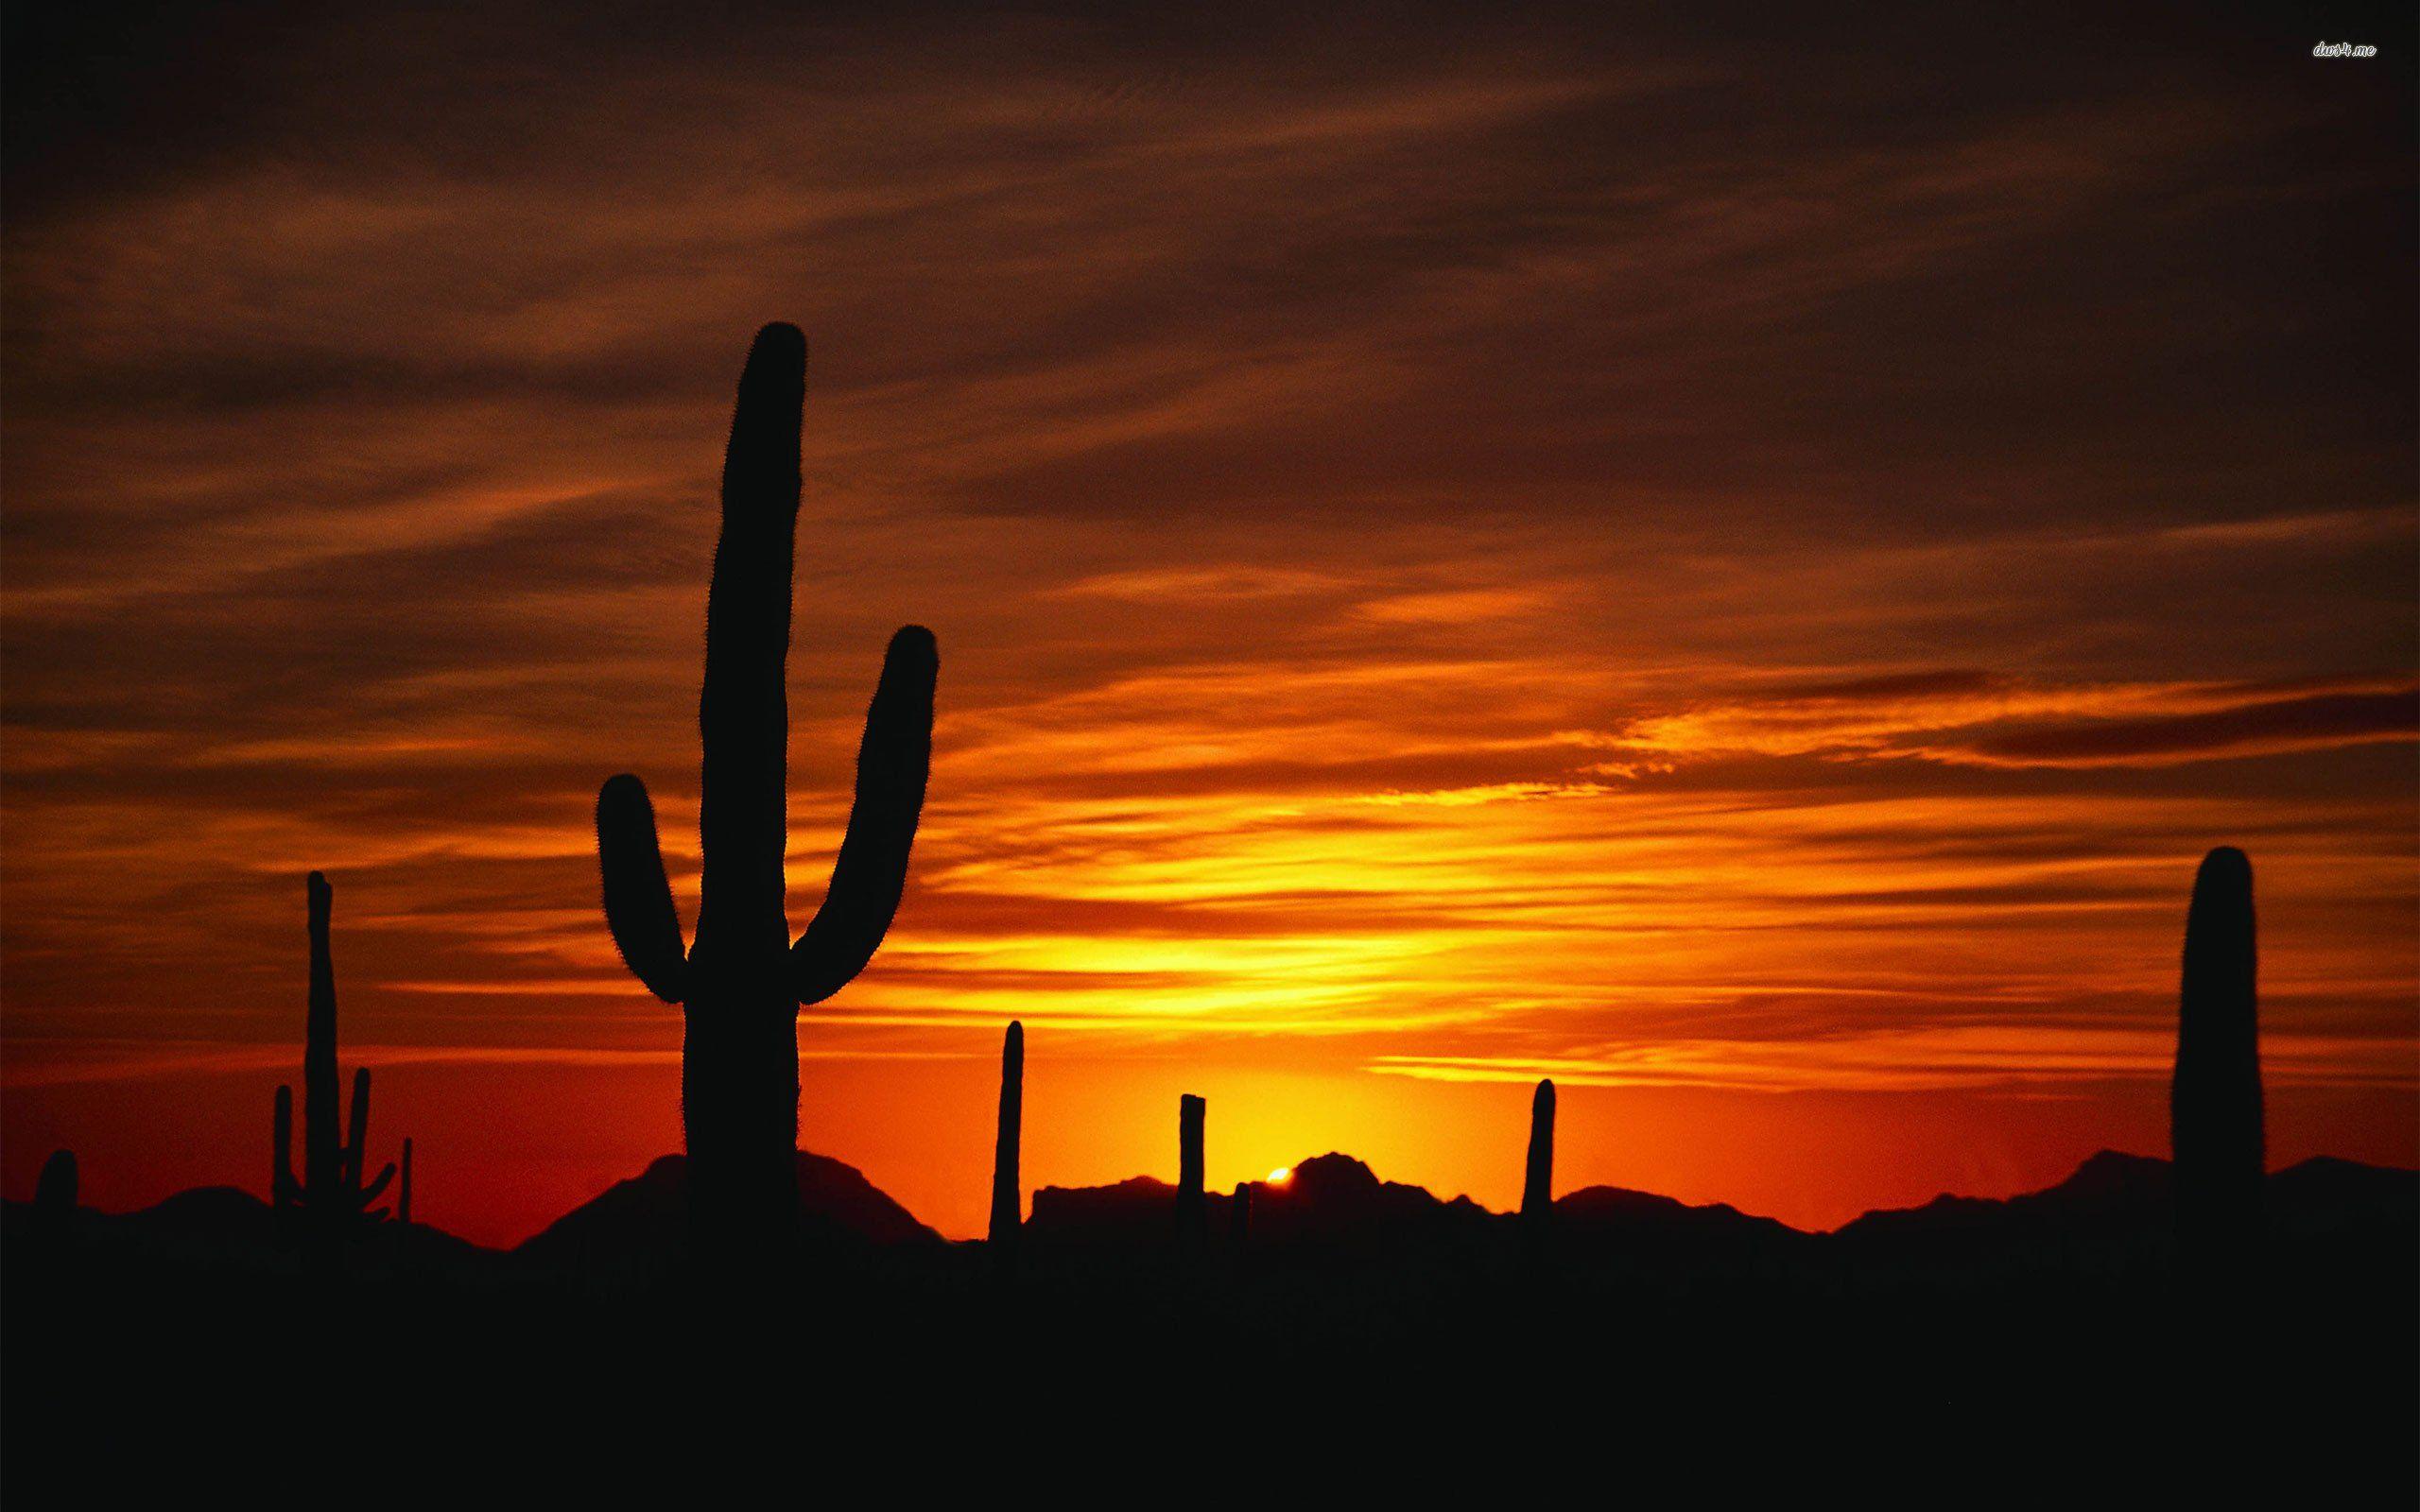 Deserts Sunset  Desert sunset graphy Desert sunset Desert sunset  painting Tucson Sunset HD phone wallpaper  Pxfuel